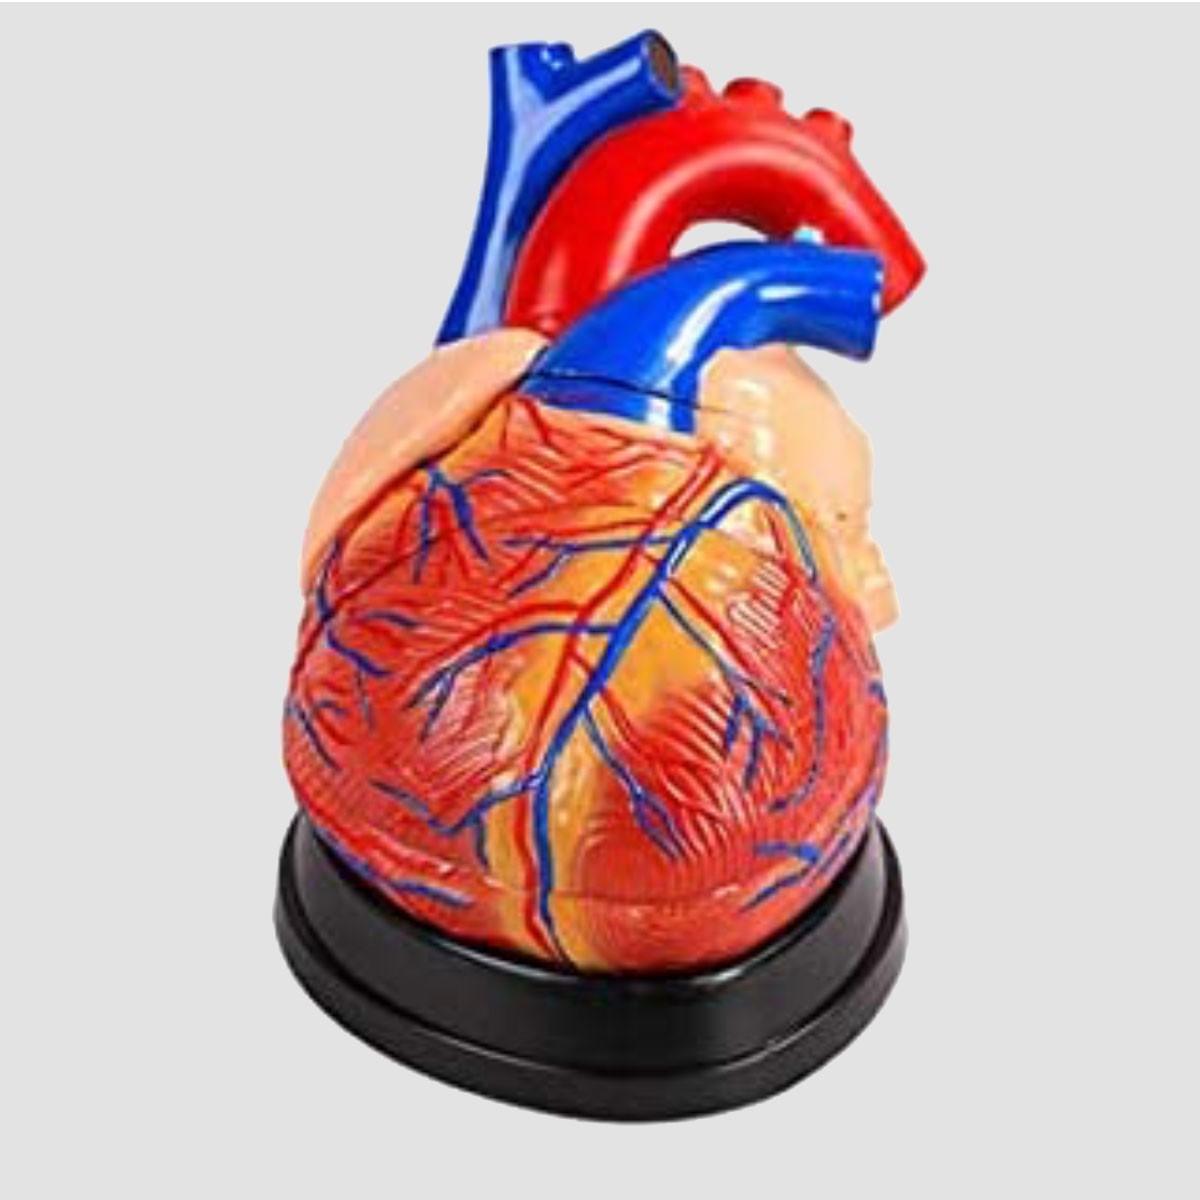 Modèle Anatomique De Coeur (Heart Model) 3 parties